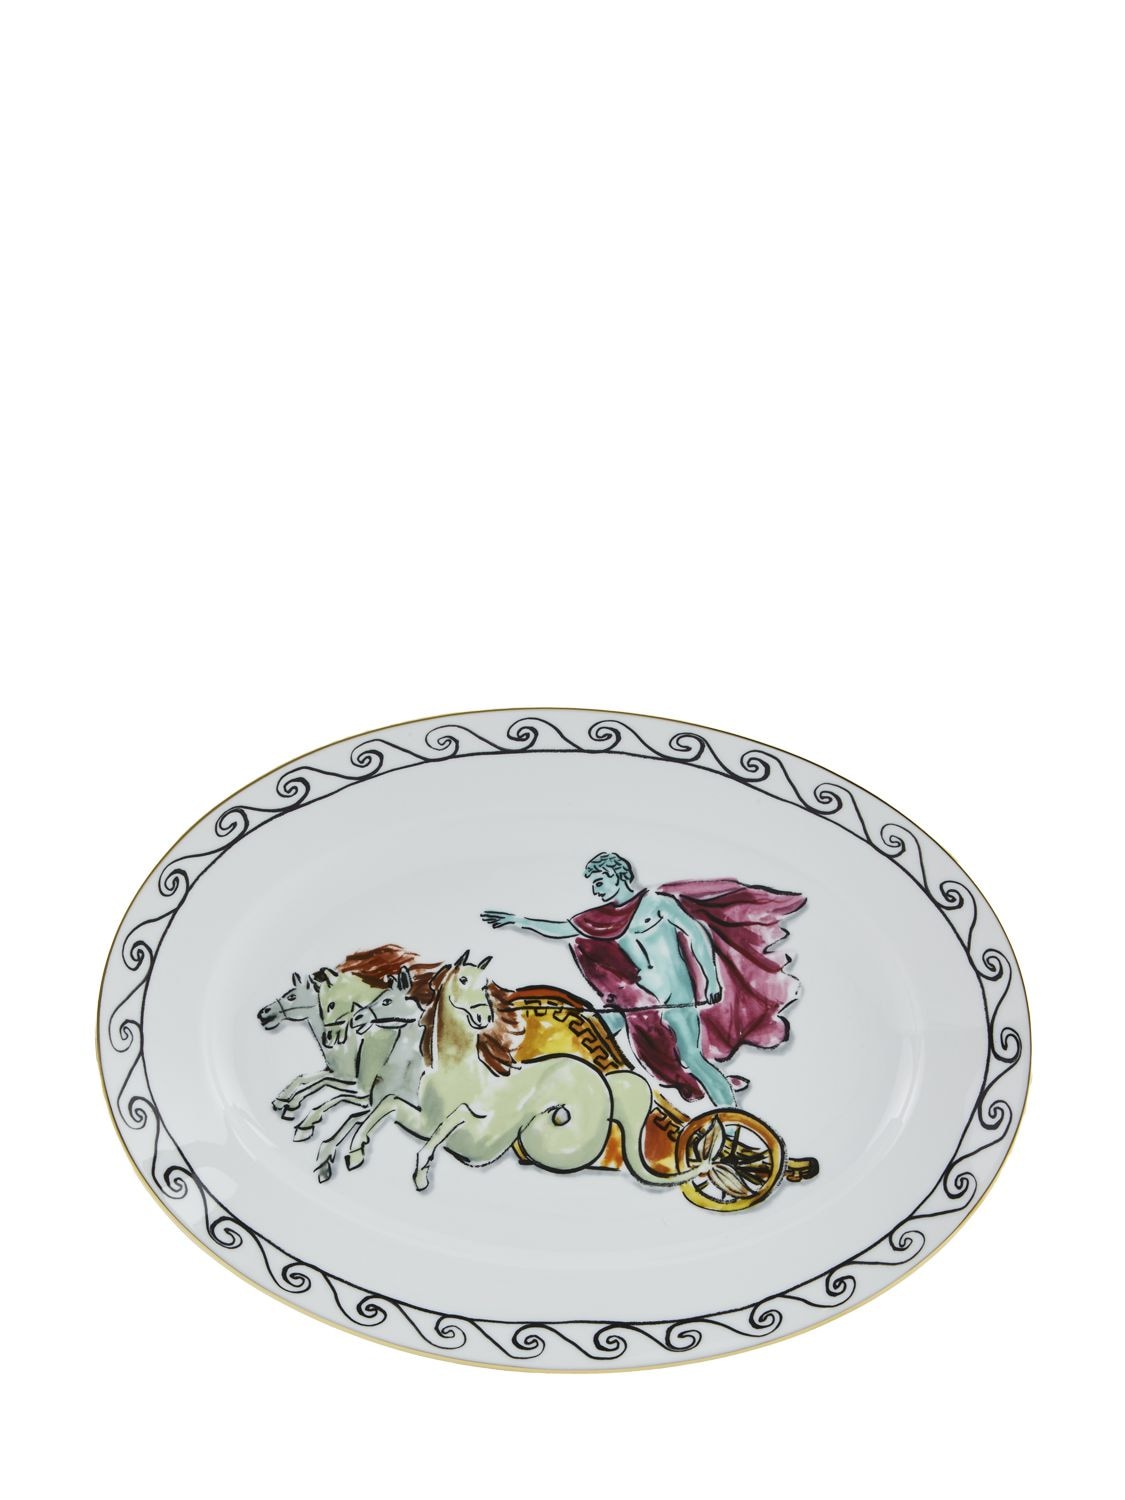 Casa Plato Oval Nettuno De Porcelana 34cm Unique - GINORI 1735 - Modalova